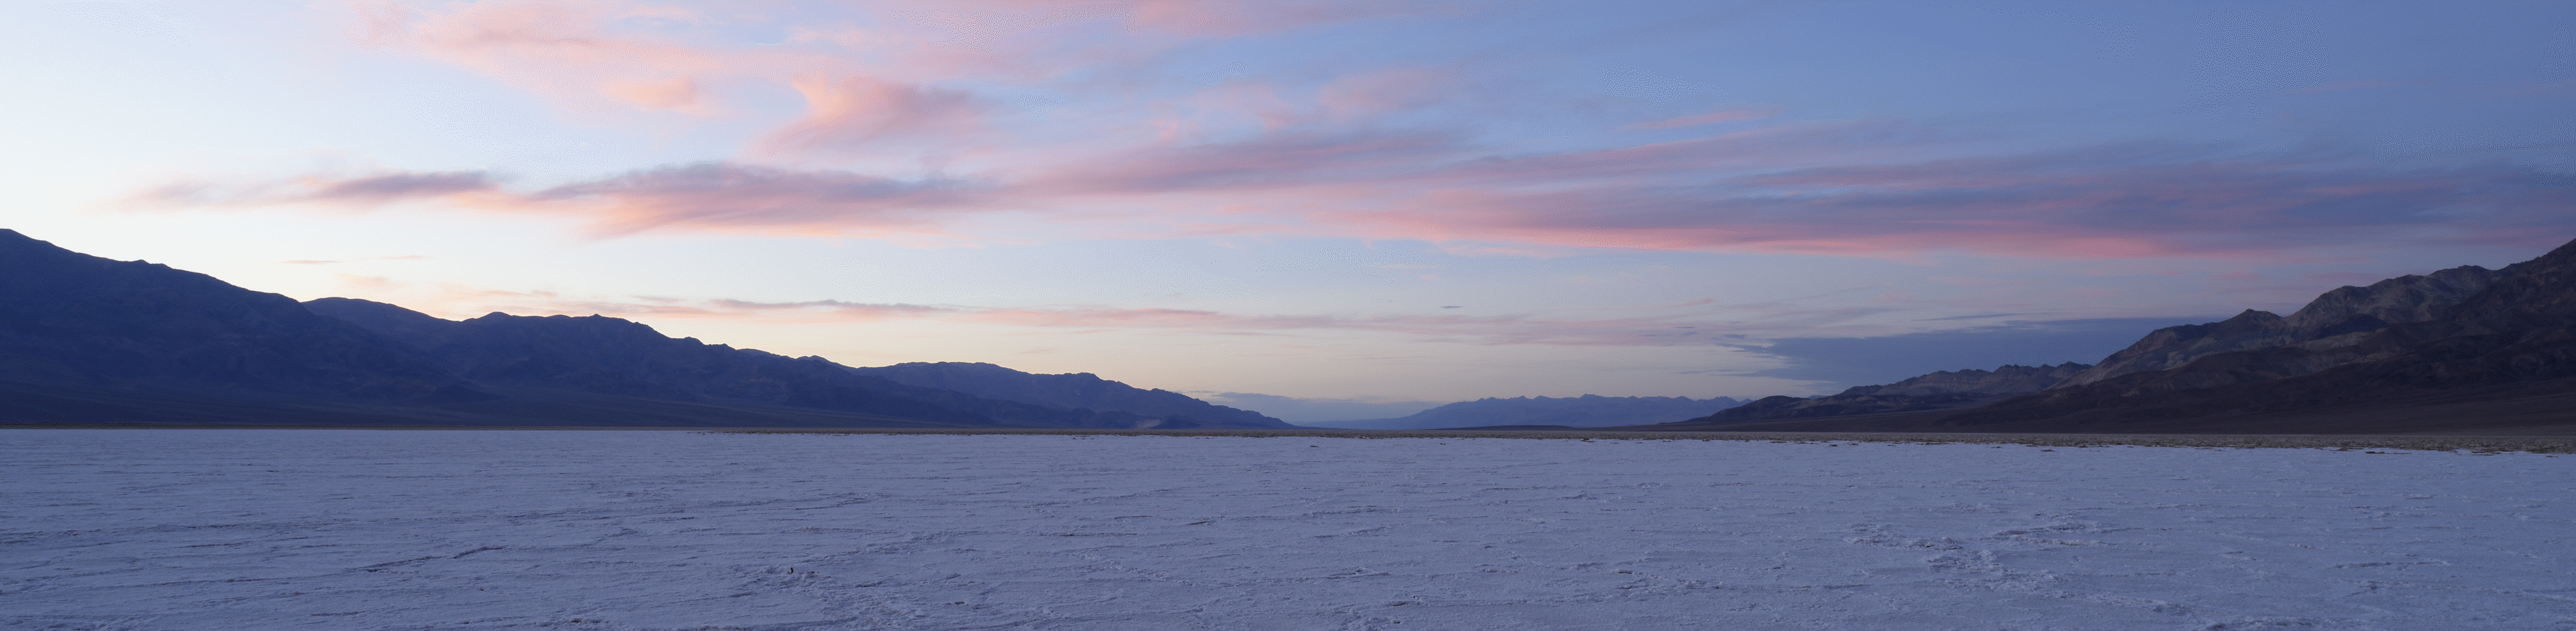 Széles látószögű felvétel sivatagi tájról naplementével a távoli hegyek mögött